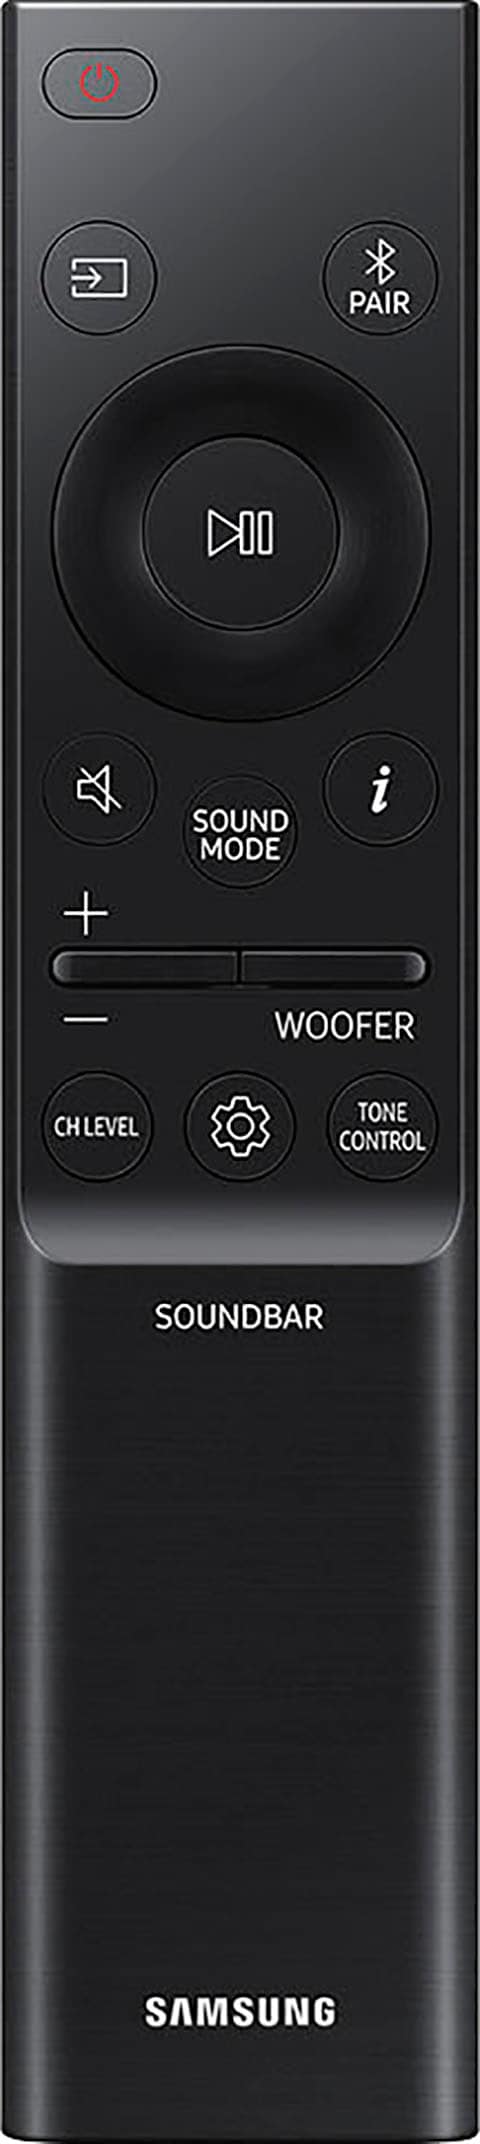 Samsung Soundbar »HW-Q995GC«, Gratis dazu:48 Rücklautsprecher 4.0.2 bestellen Rechnung im von auf Wert Mon.Garantie 39,99€